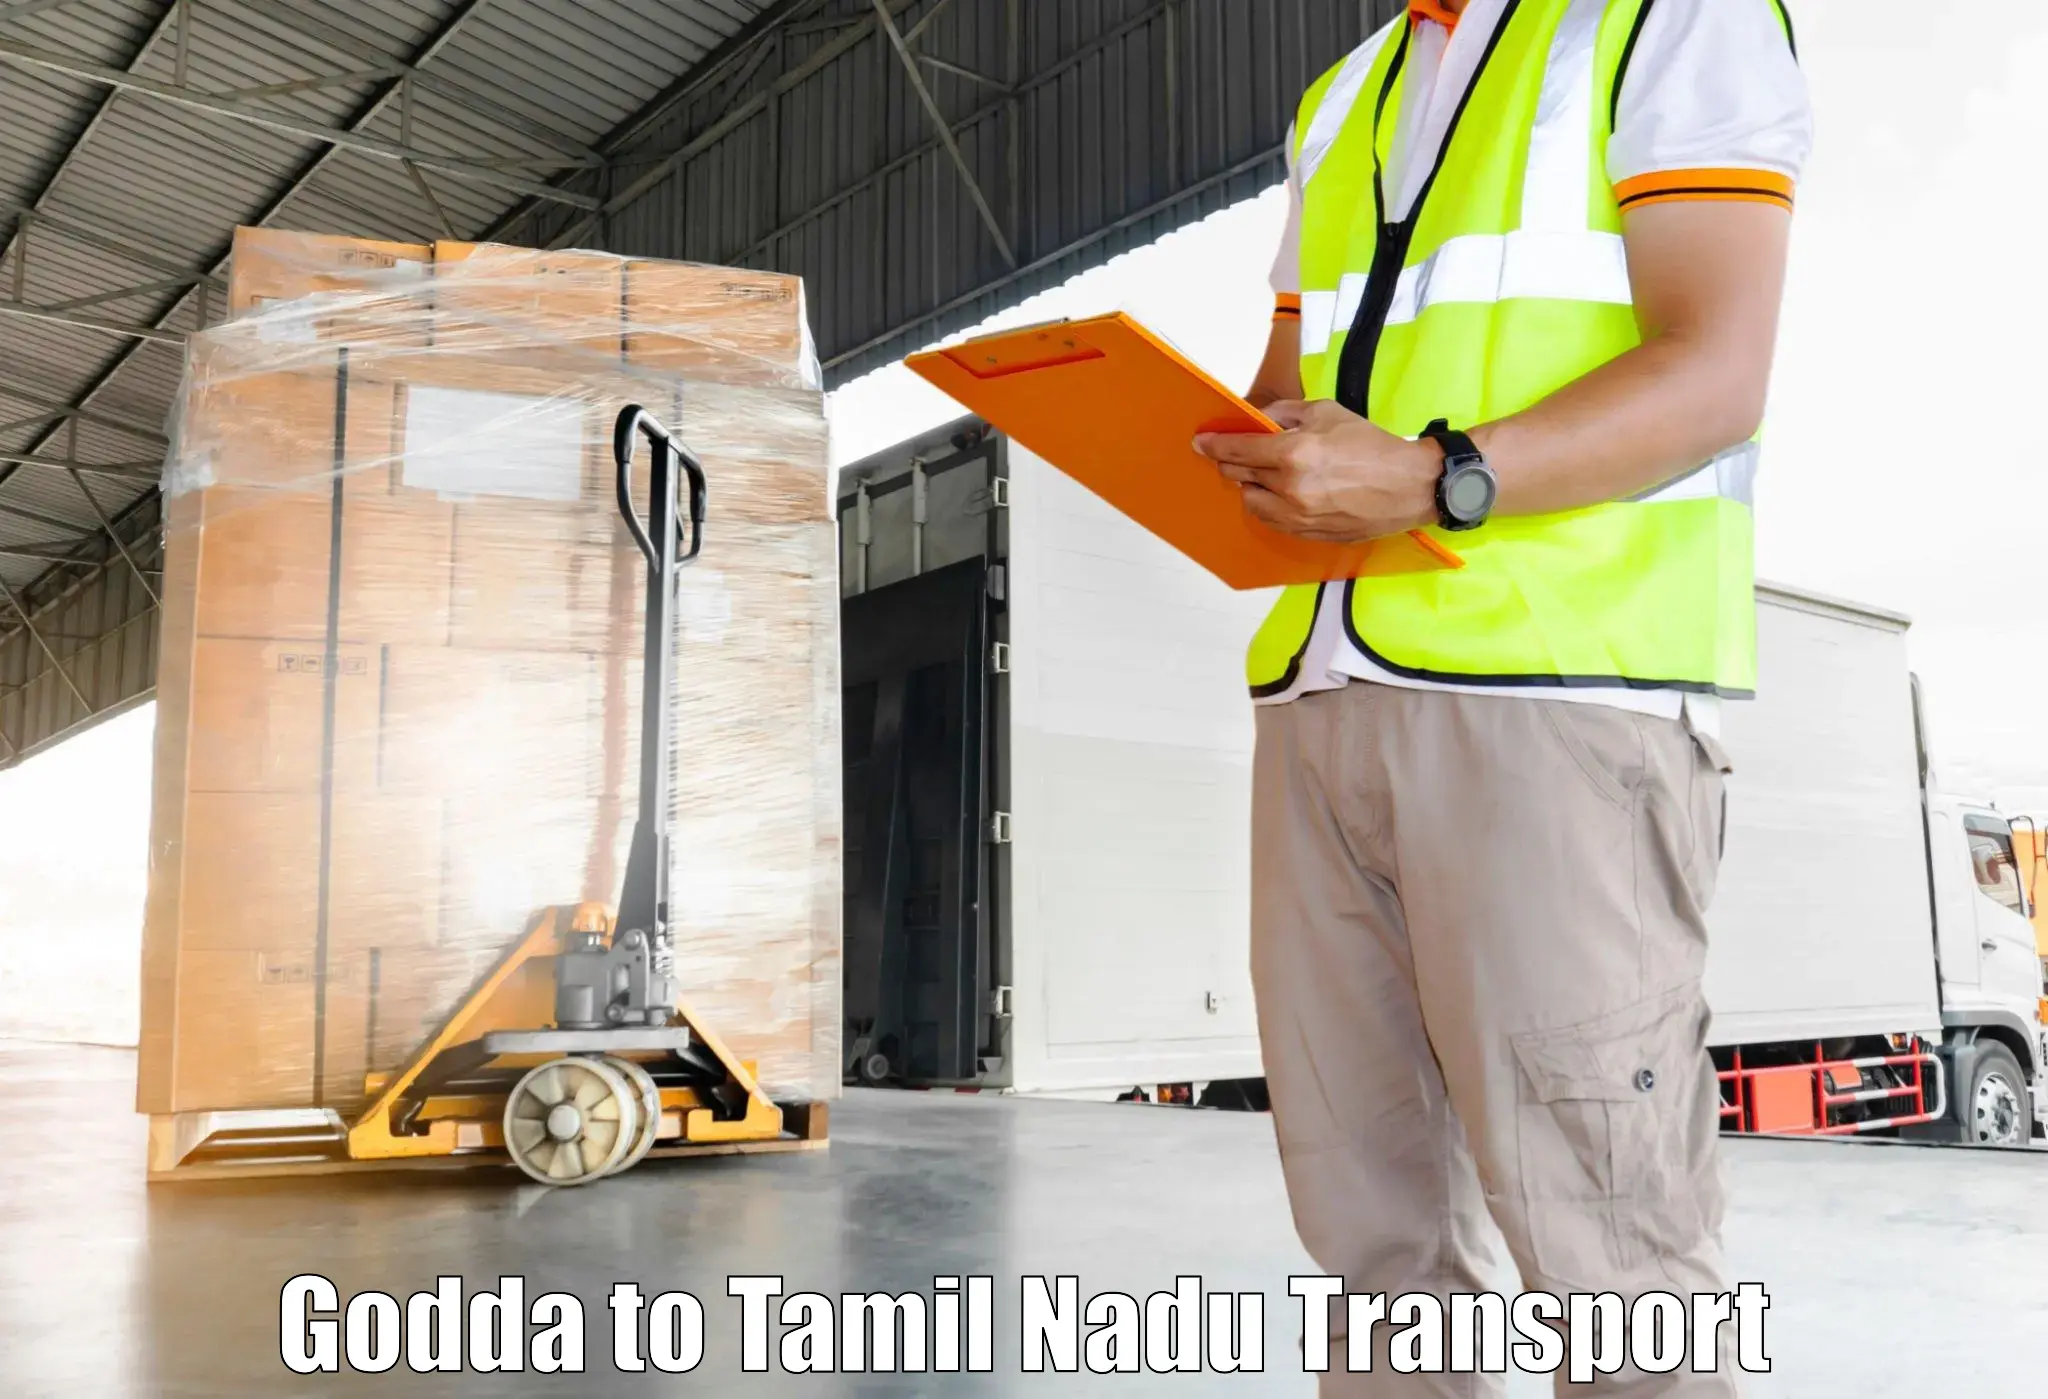 Land transport services Godda to Kulithalai